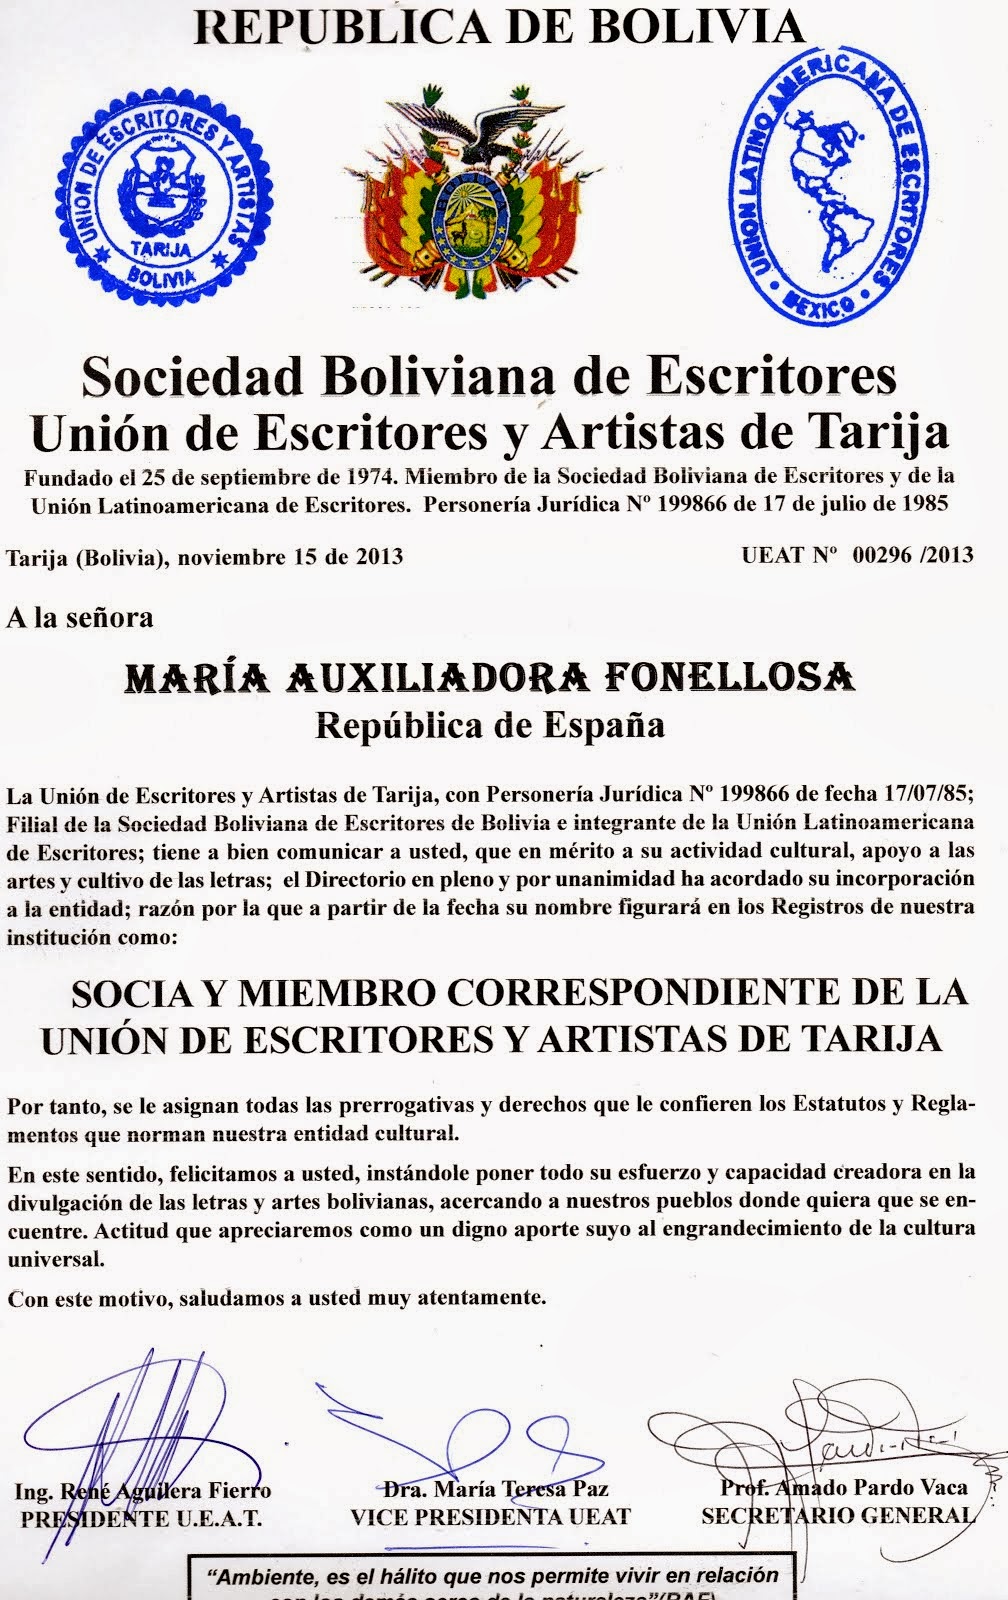 SOCIA DE LA UNIÓN DE ESCRITORES DE TARIJA (BOLIVIA)